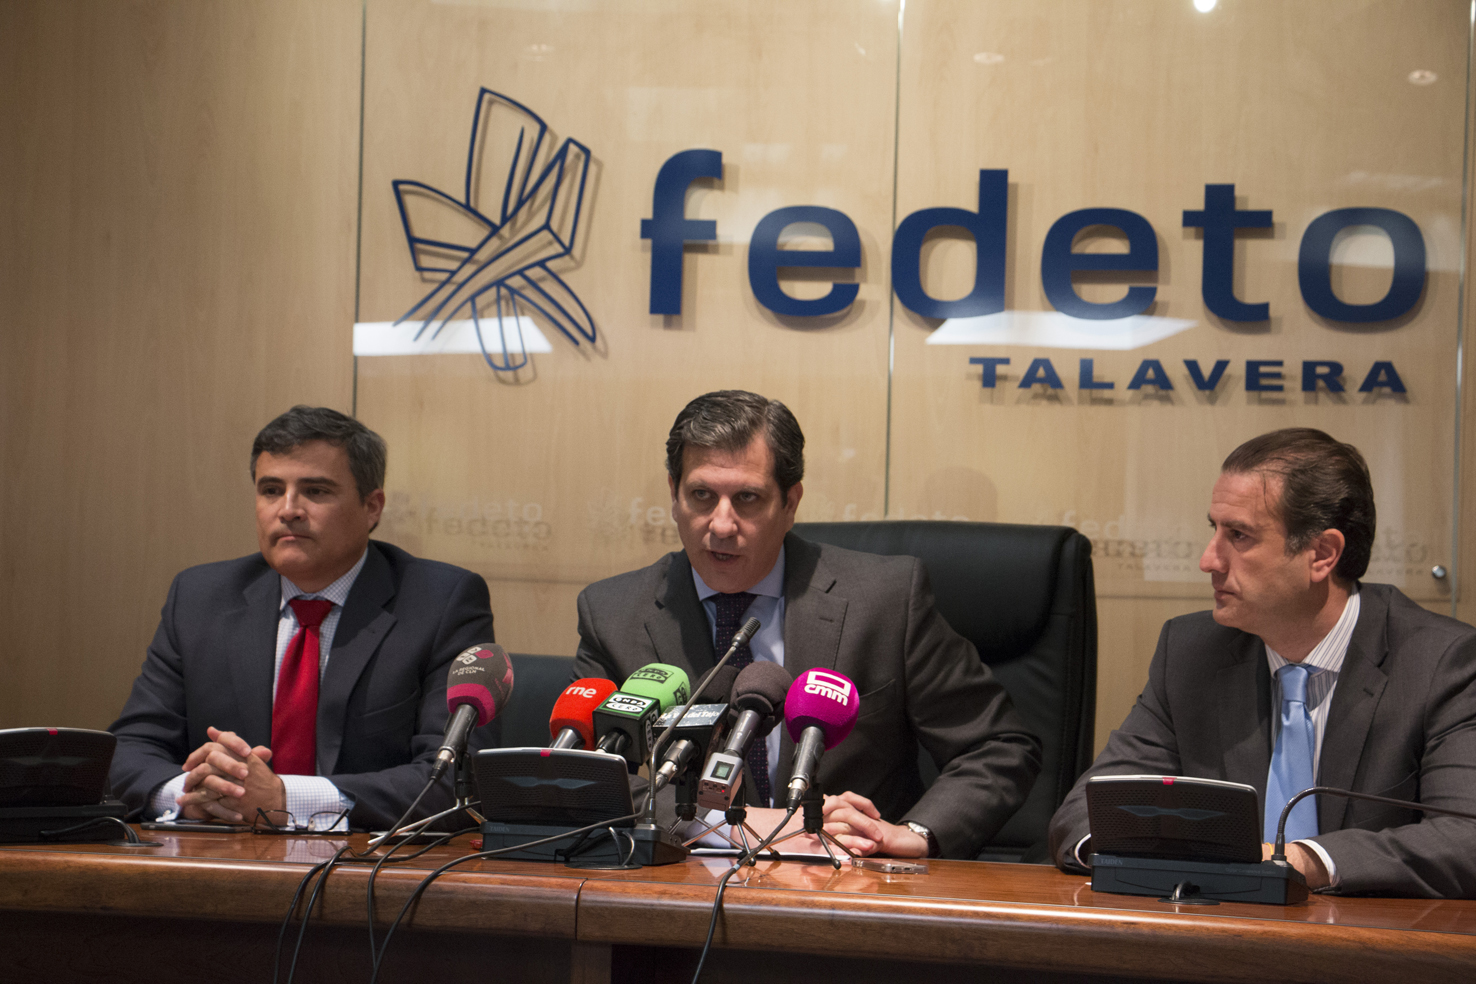 Rueda de prensa en la sede de Fedeto en Talavera, debate en el Congreso